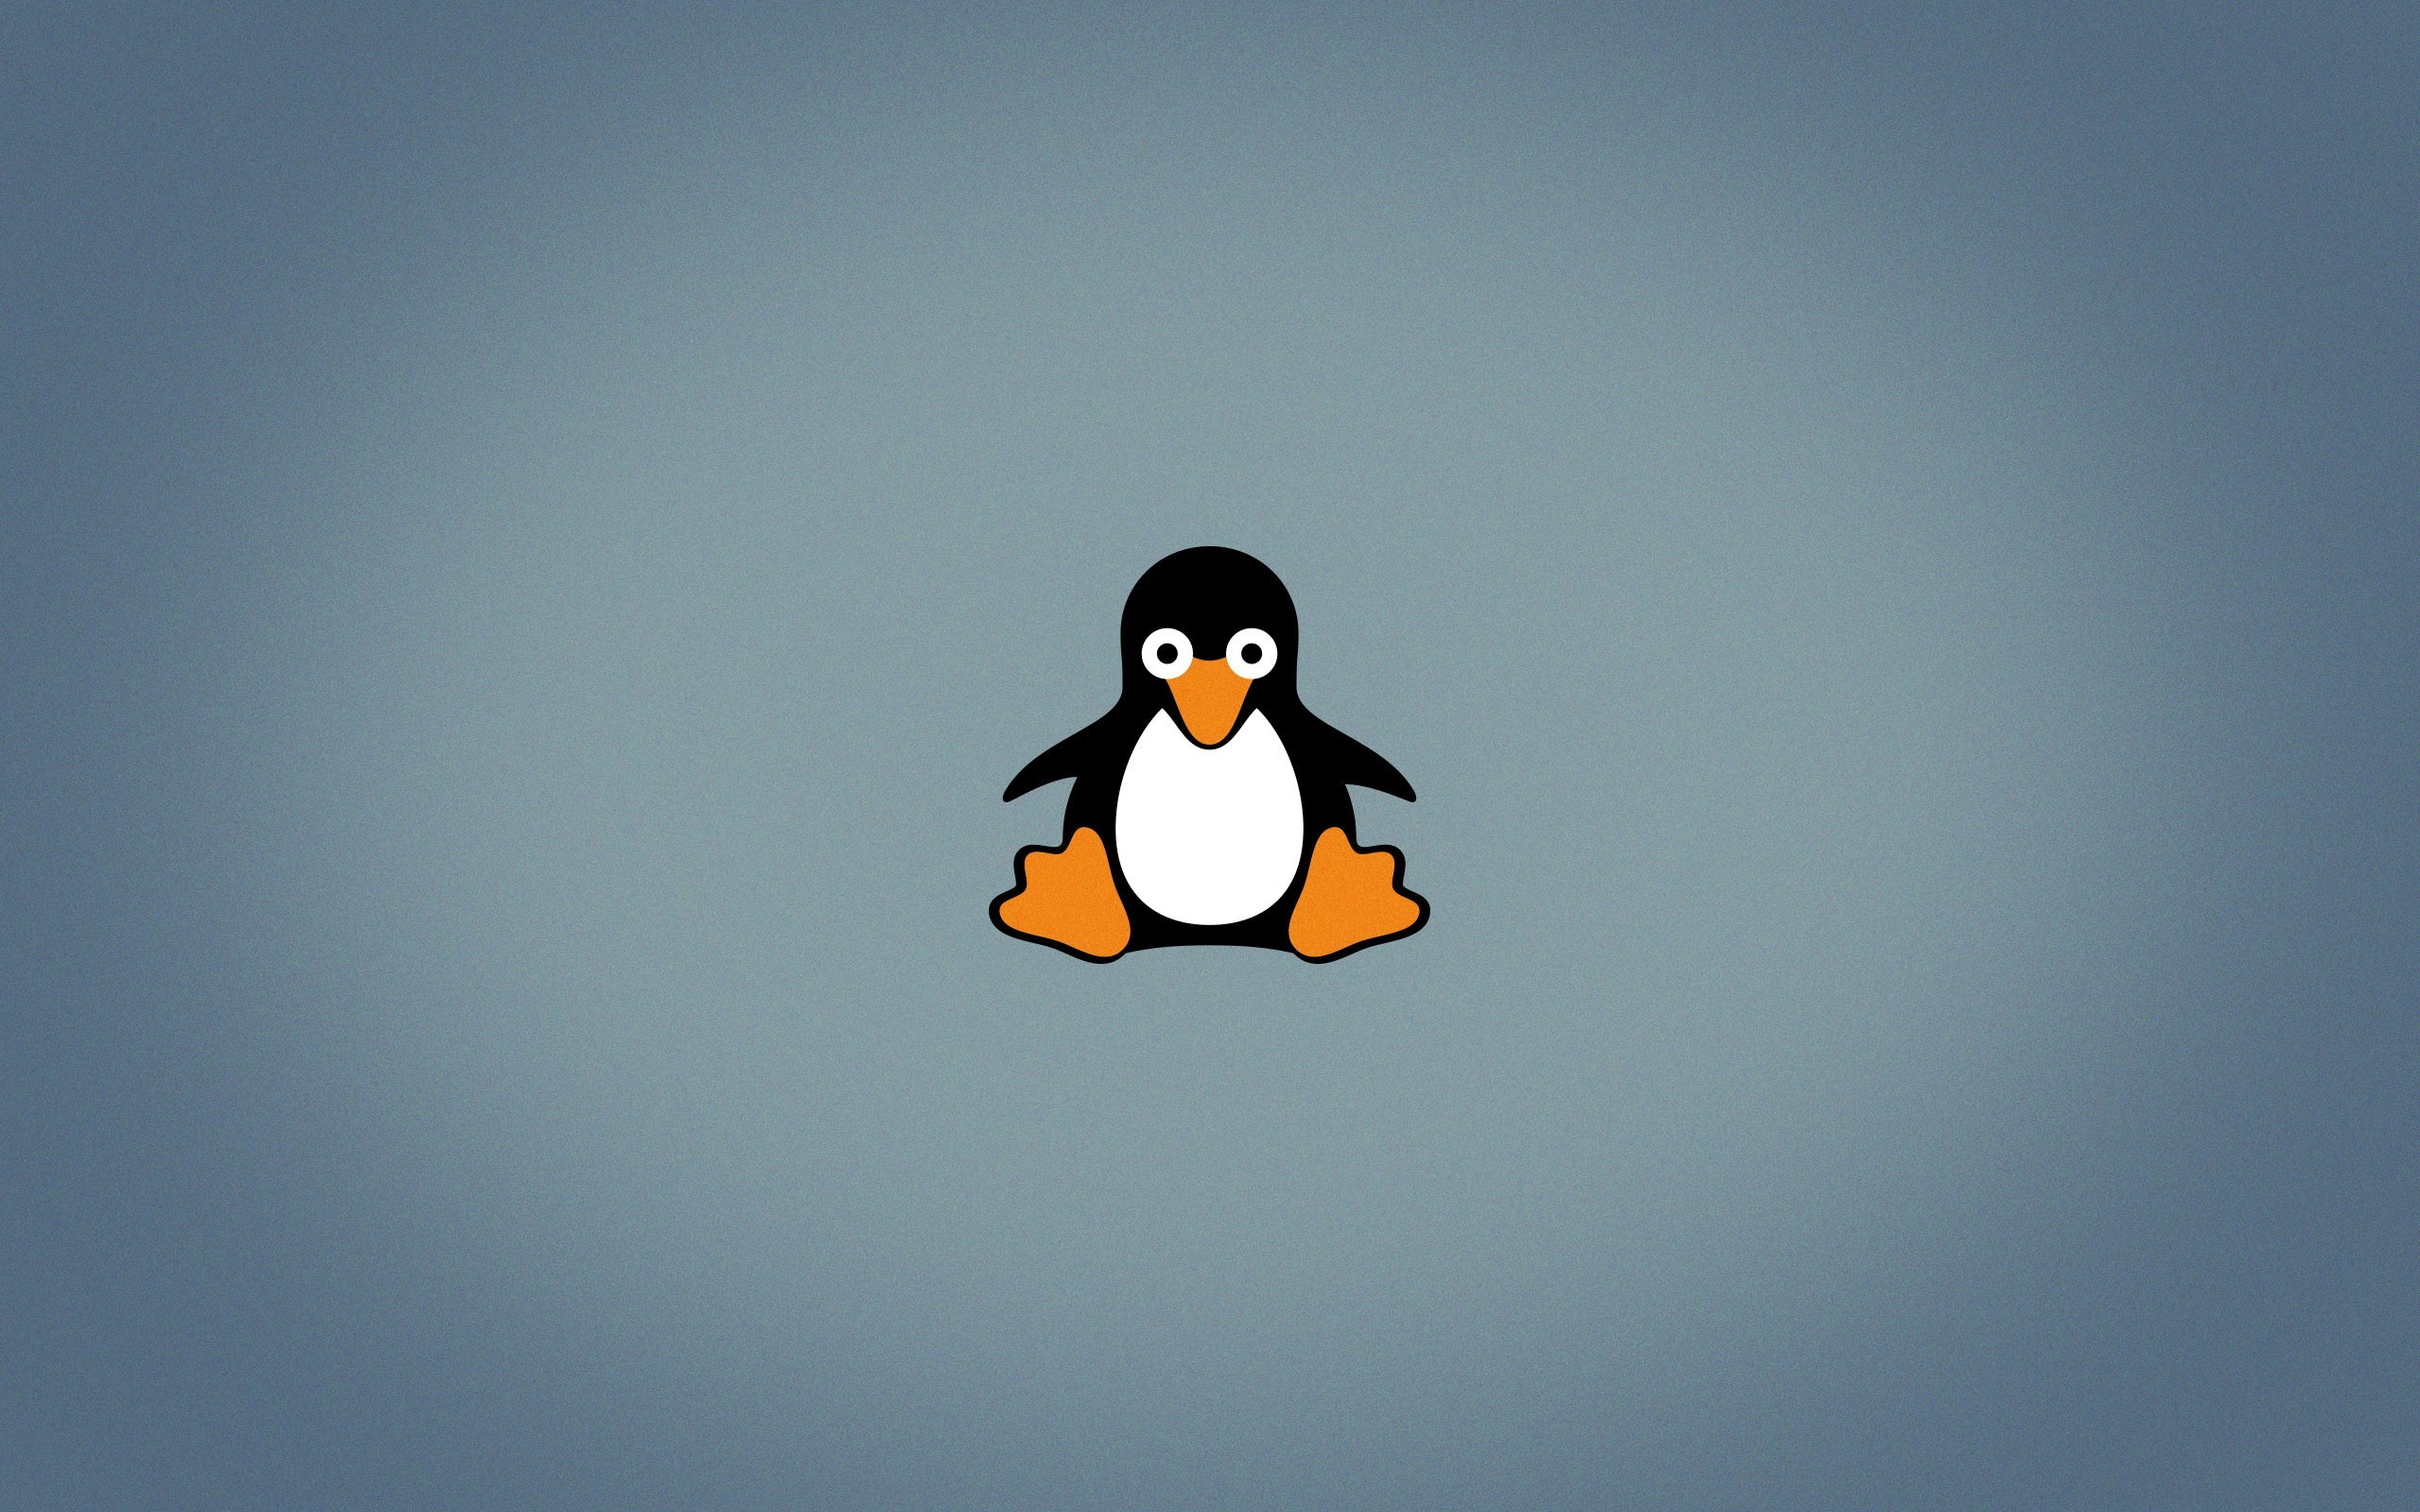 2560x1600 ... tux linux open source penguins logo wallpapers hd desktop ...